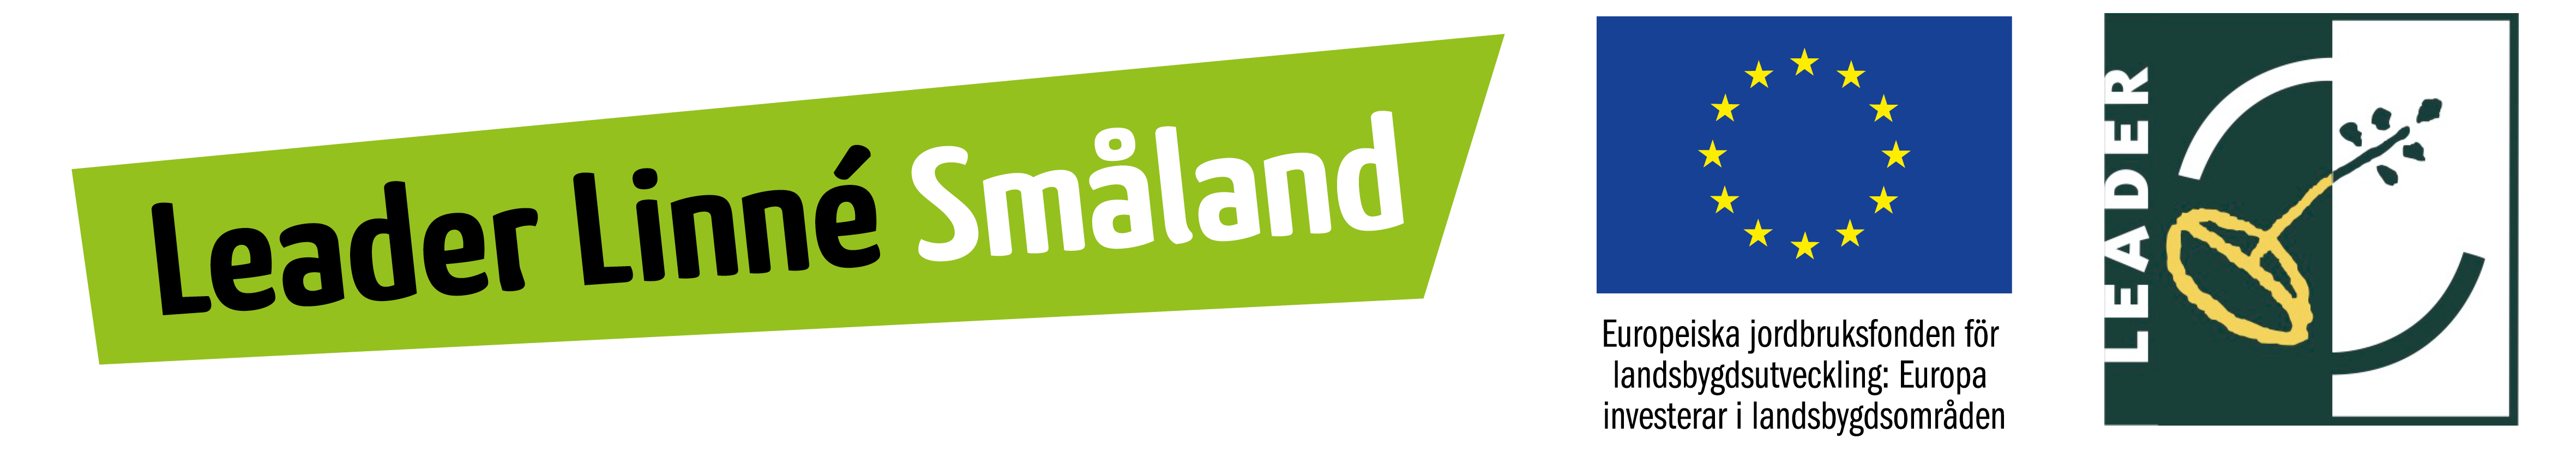 Logotyp för Leader Linne Småland, EU och Leader.